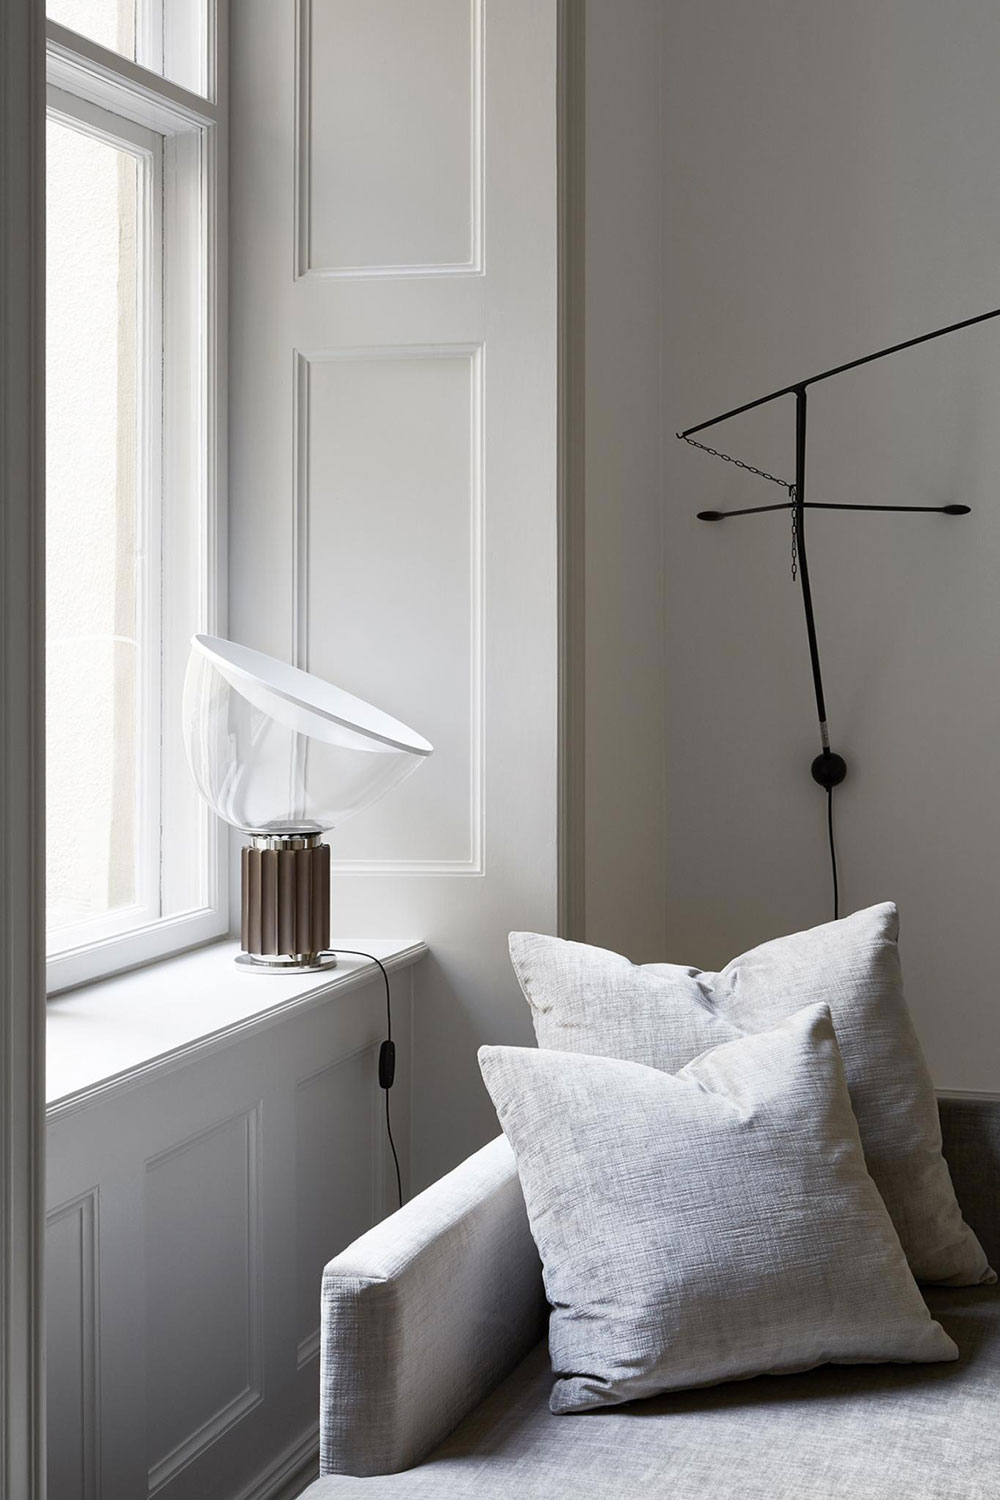 Уютный, элегантный и стильный интерьер маленькой квартиры в Стокгольме (40 кв. м)